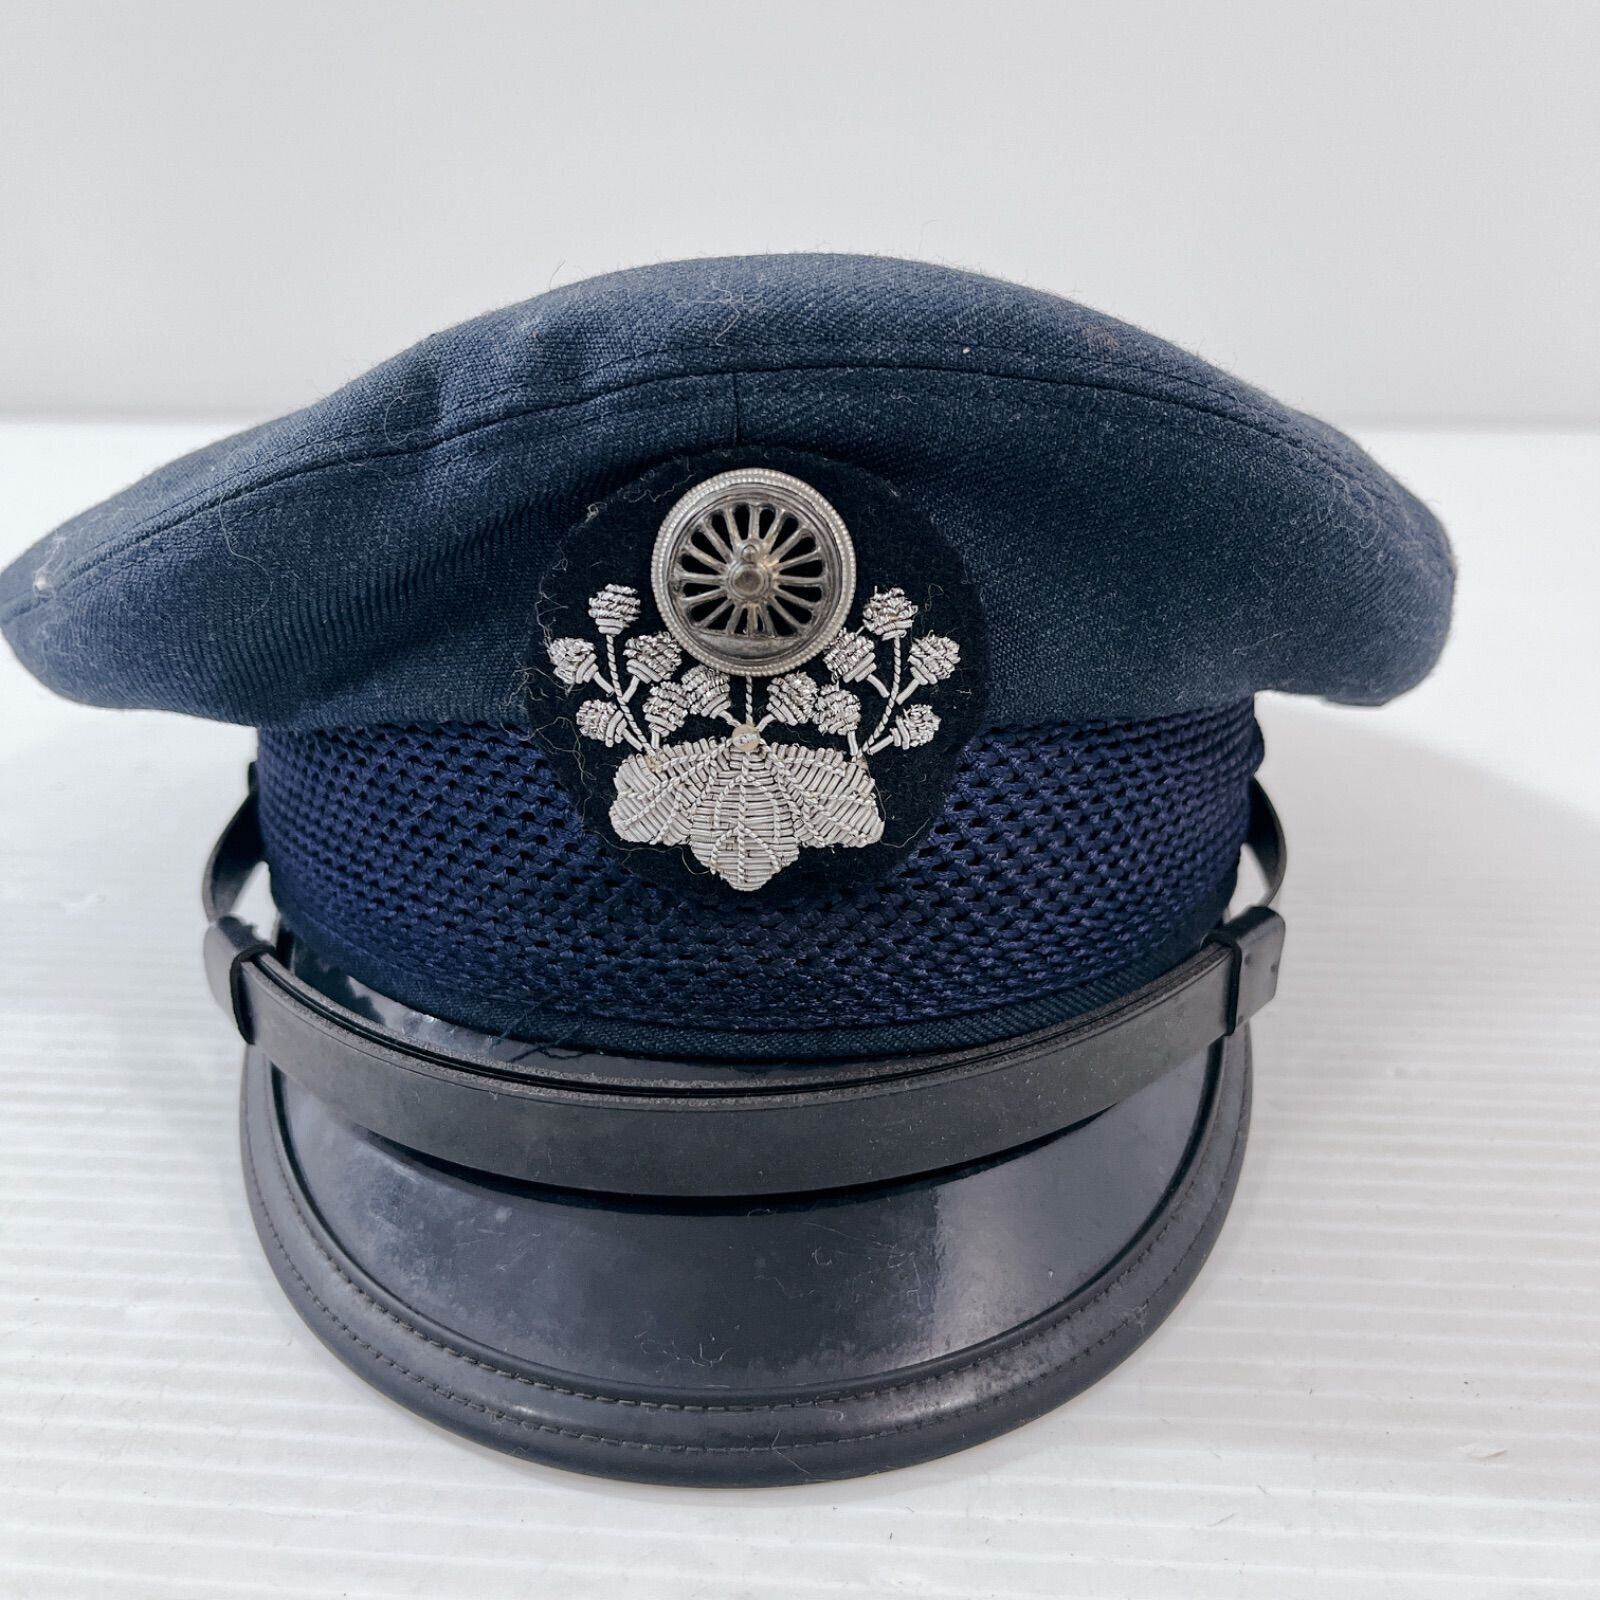 1975 Japan Railway Hat Work cap Showa Period